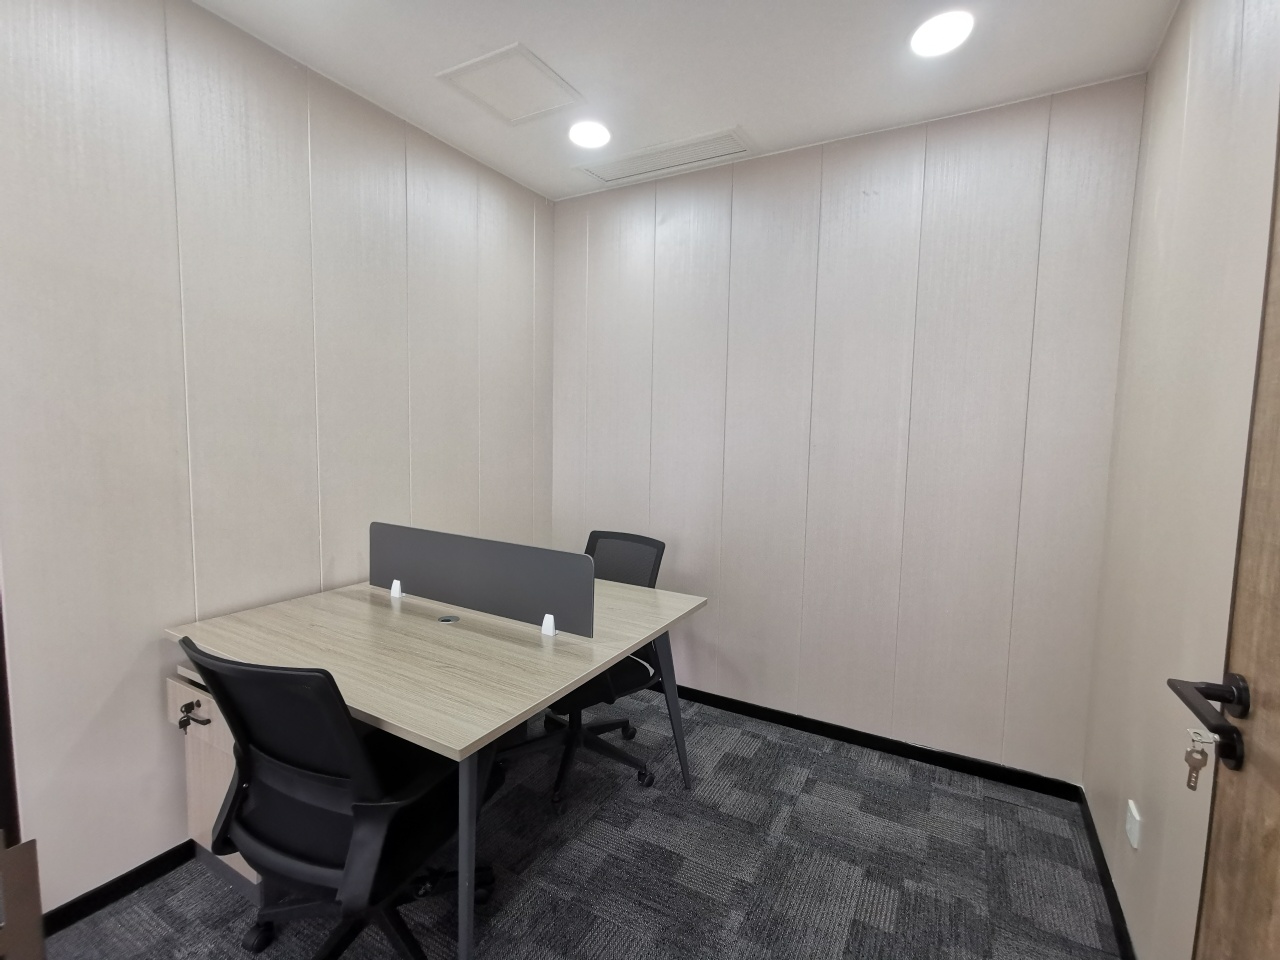 金牛区西门安格斯峰汇中心精装124平办公室 交通便利 配共享会议室